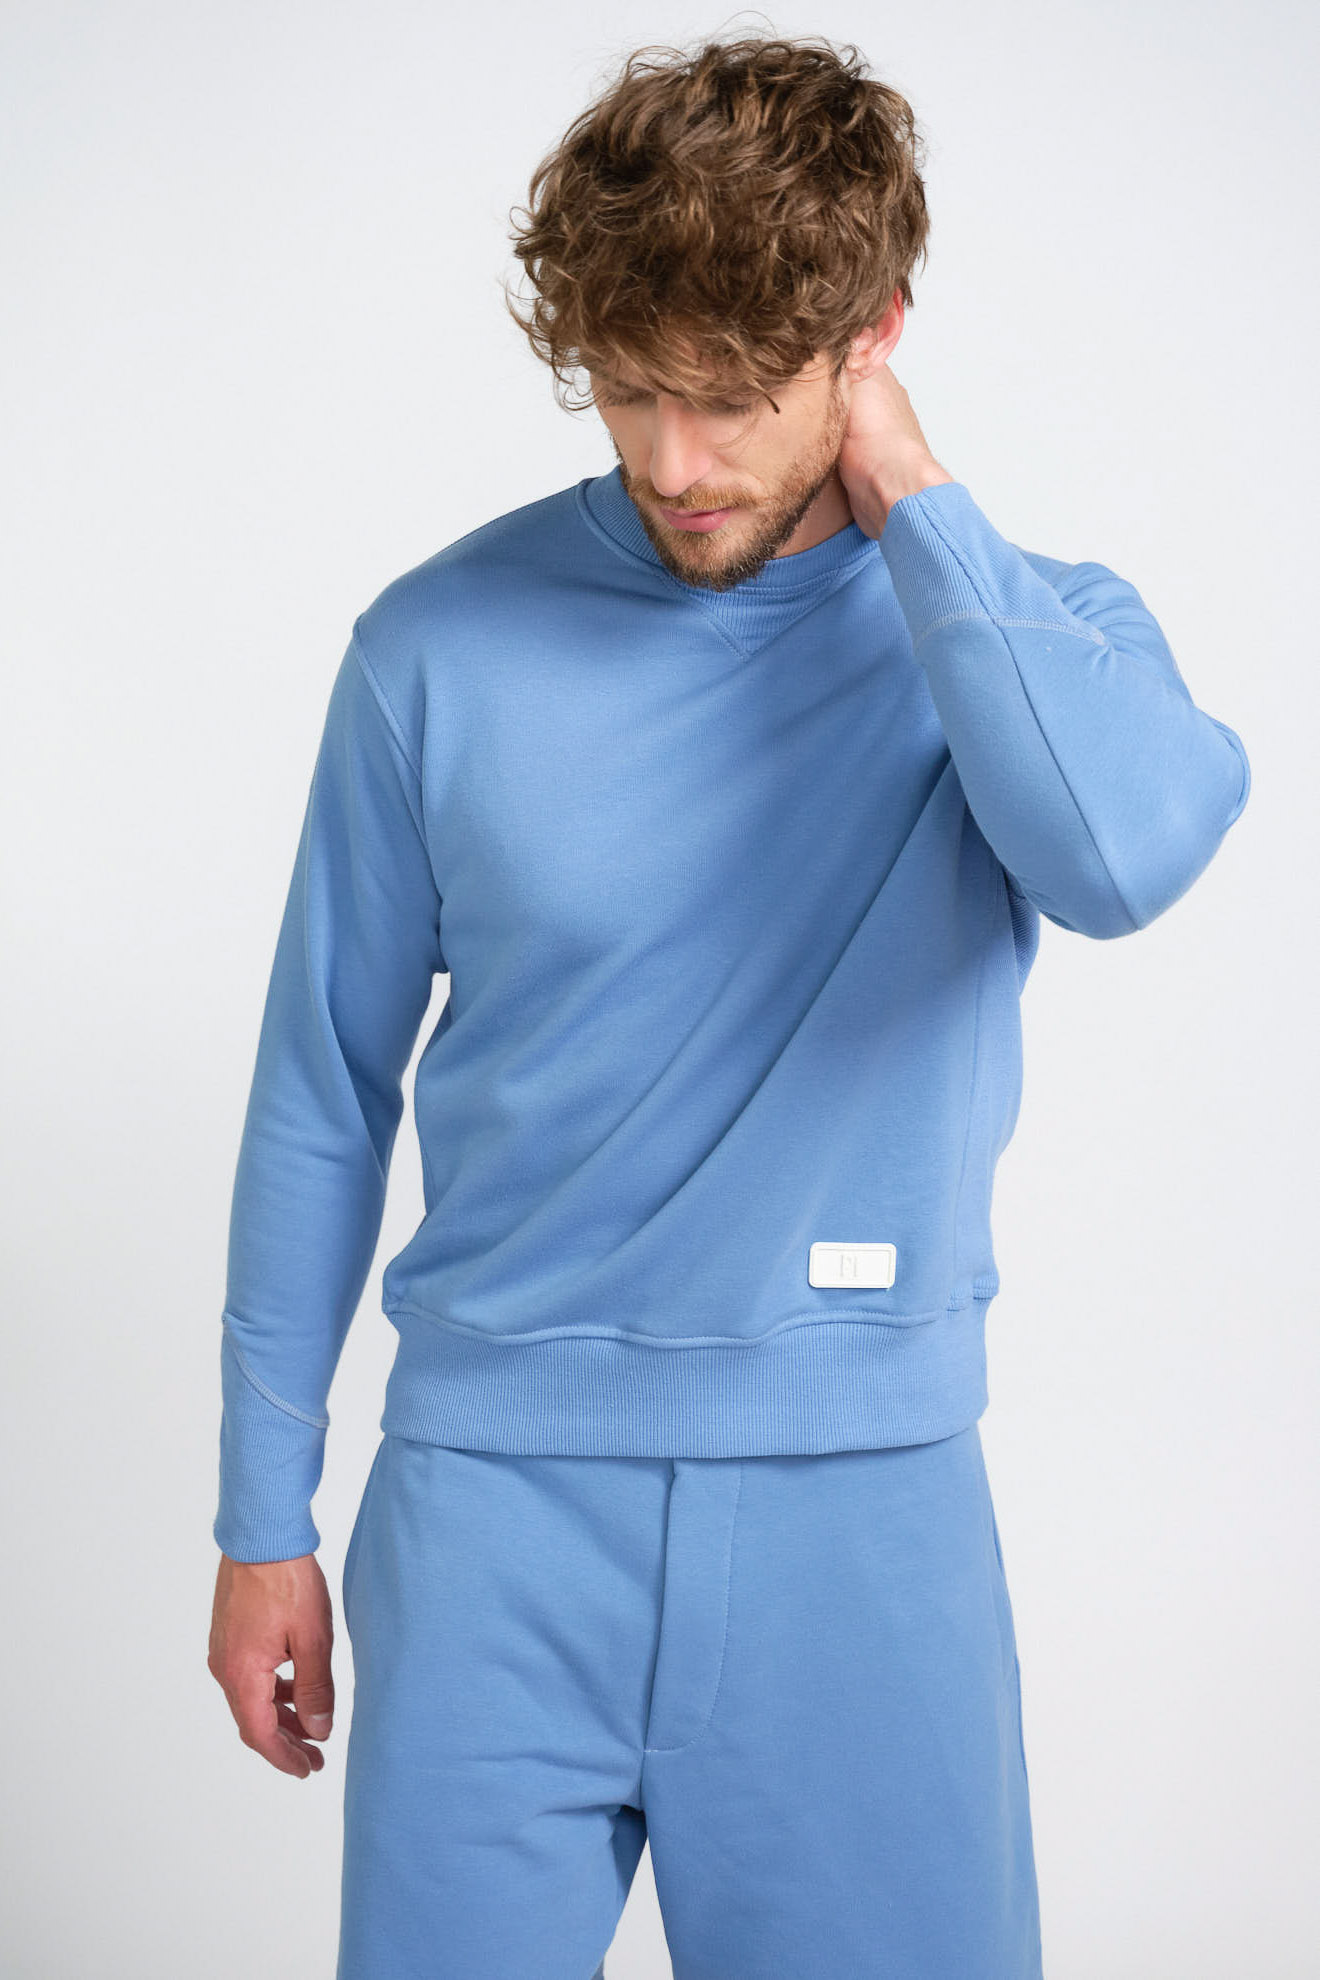 pt Torino sweater light blue white detail model front